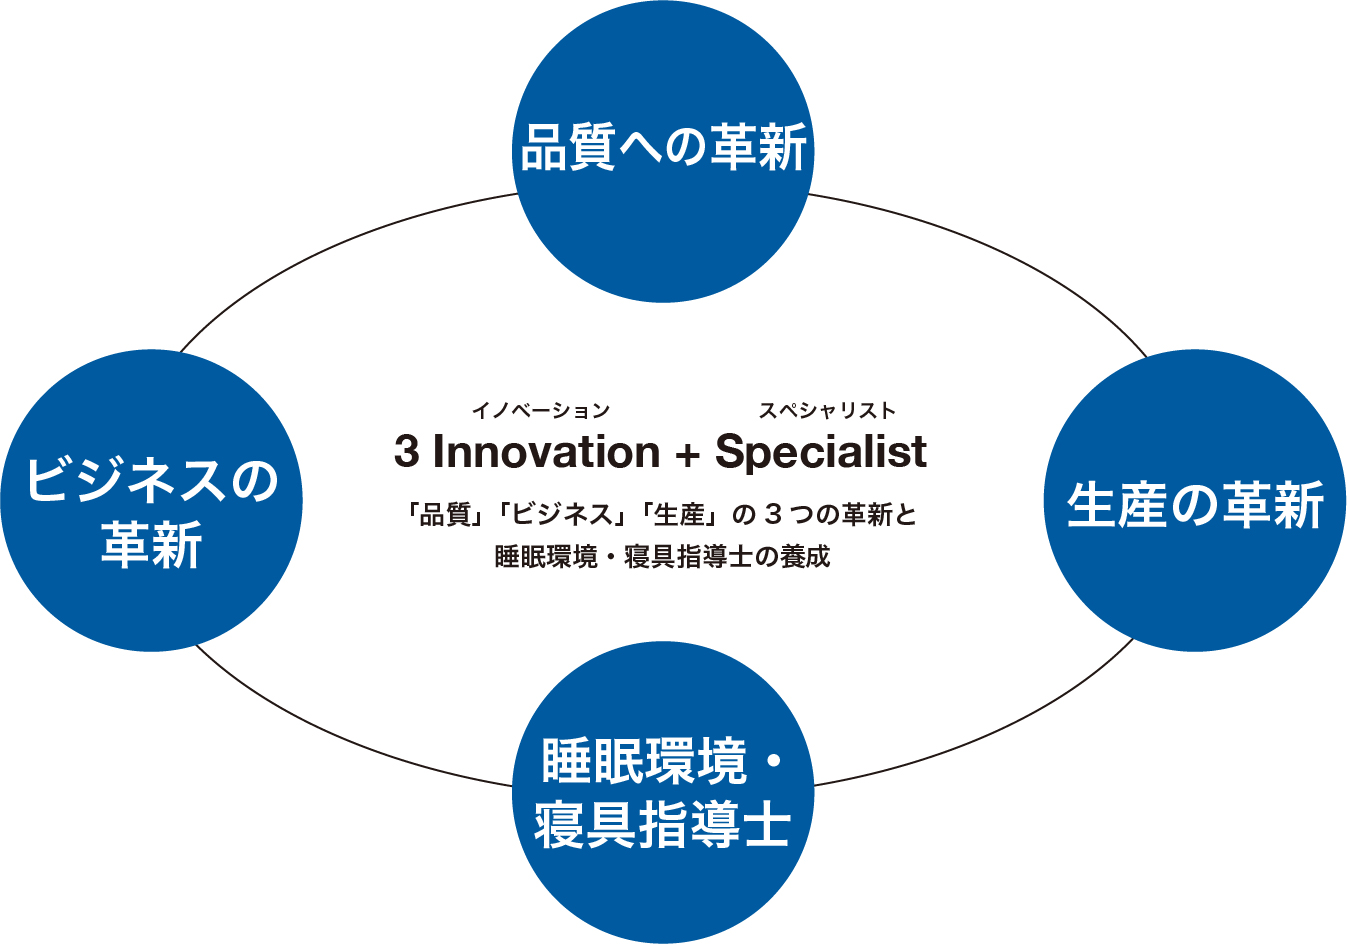 3 Innovation + Specialist